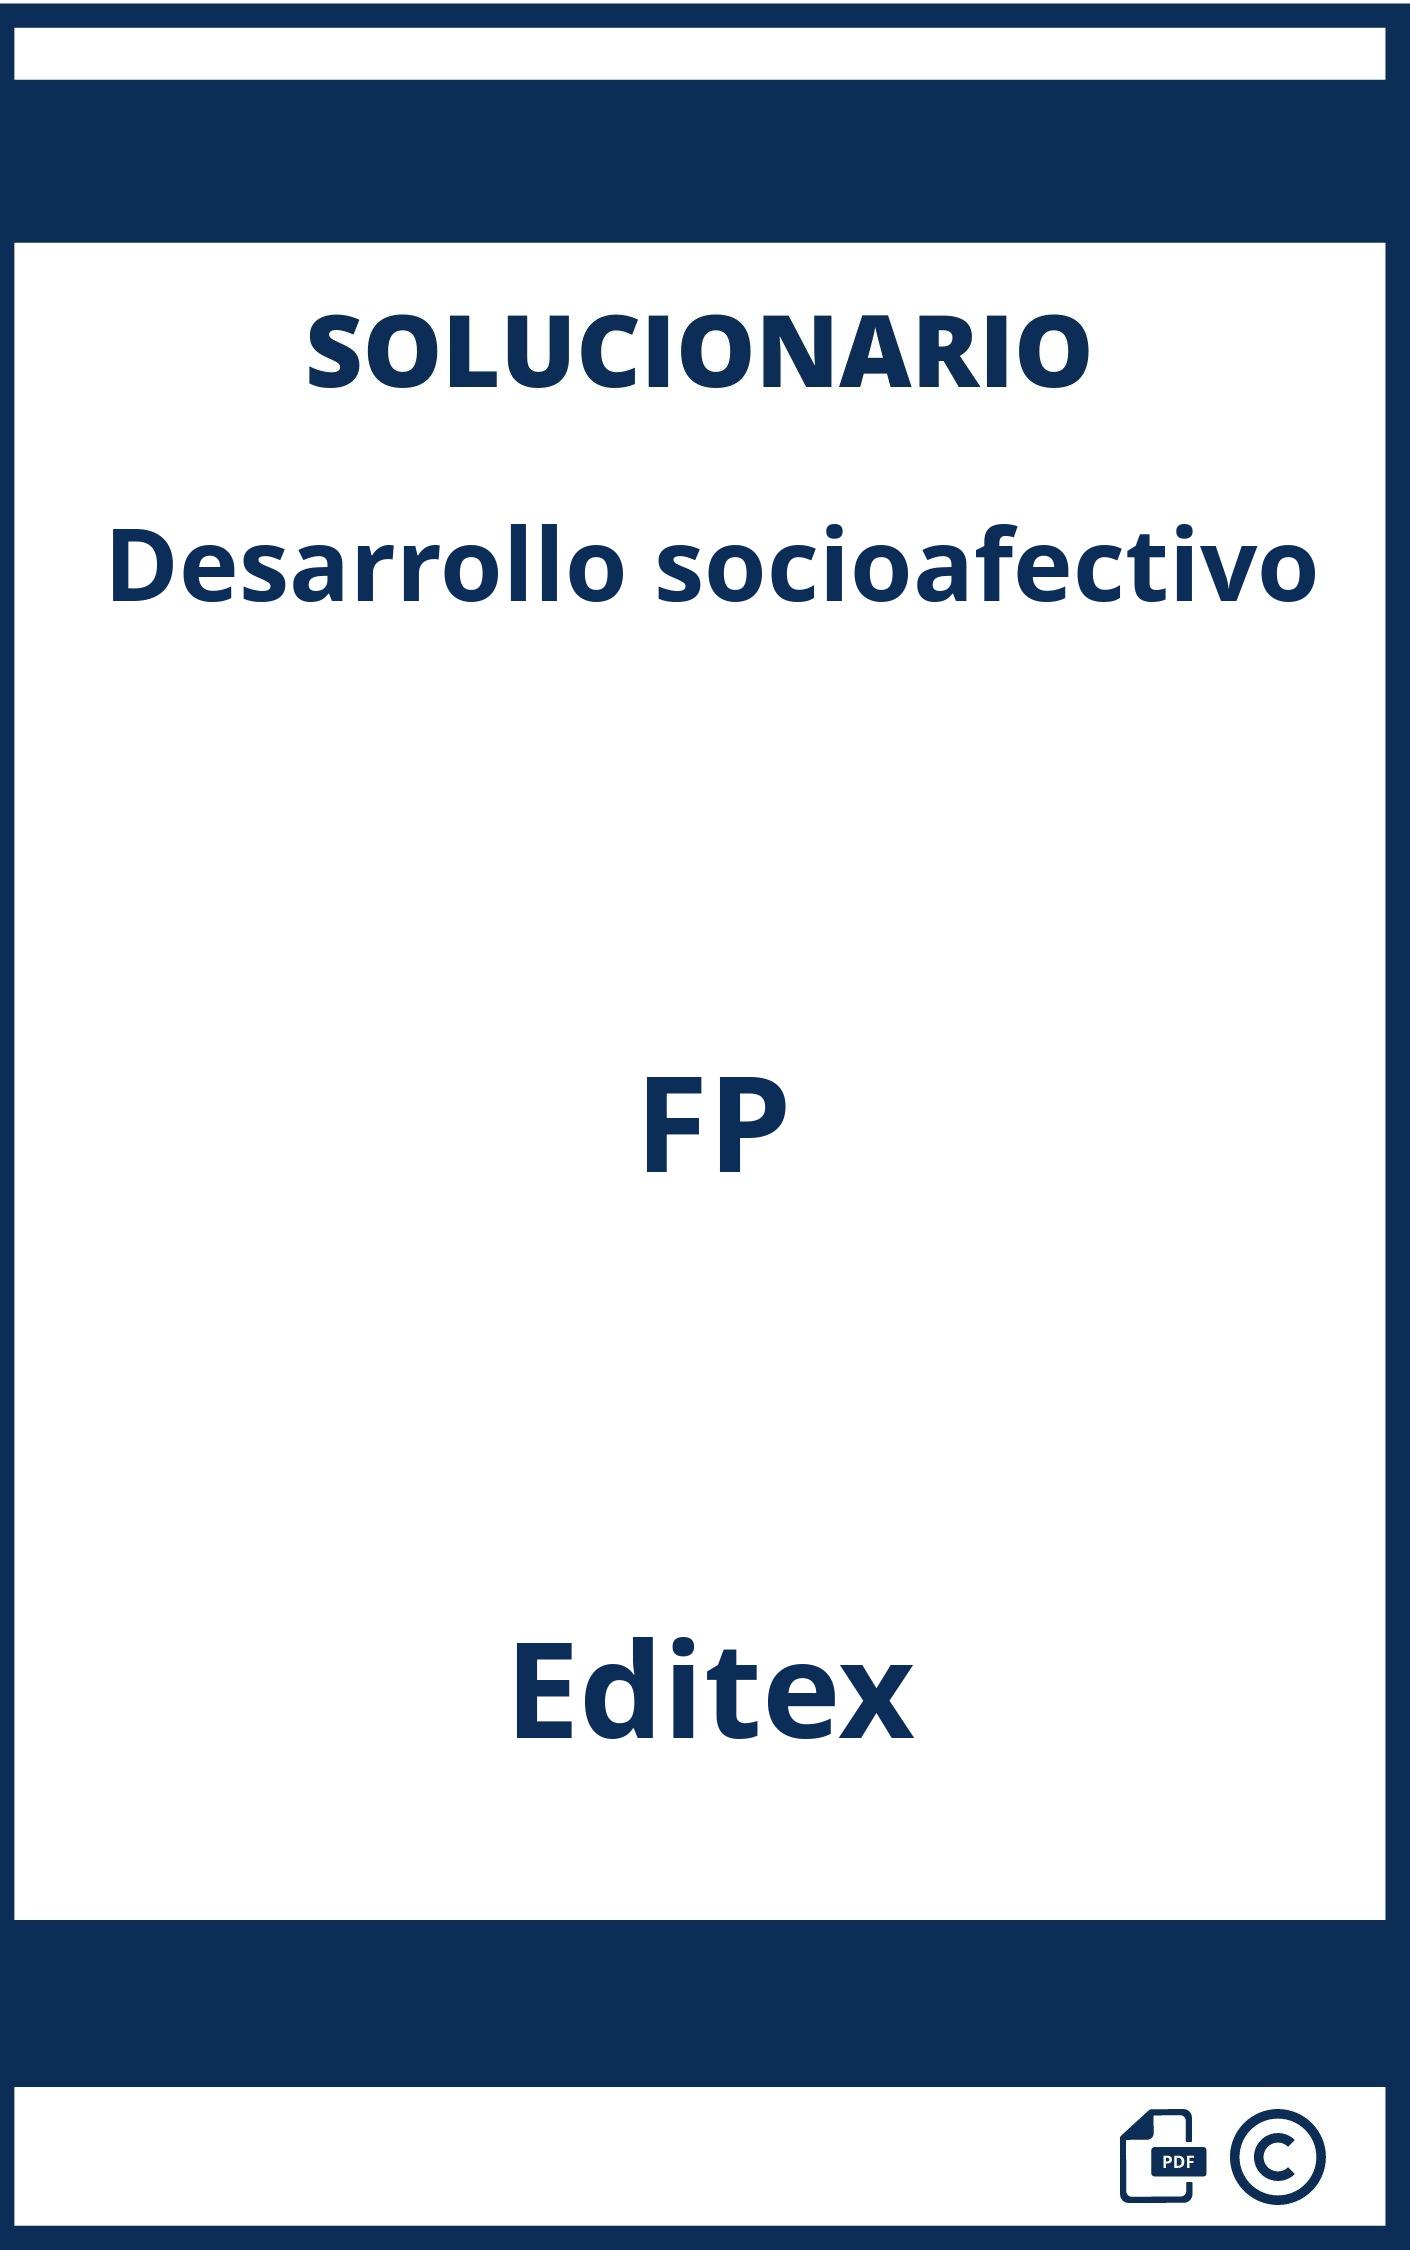 Solucionario Desarrollo socioafectivo FP Editex